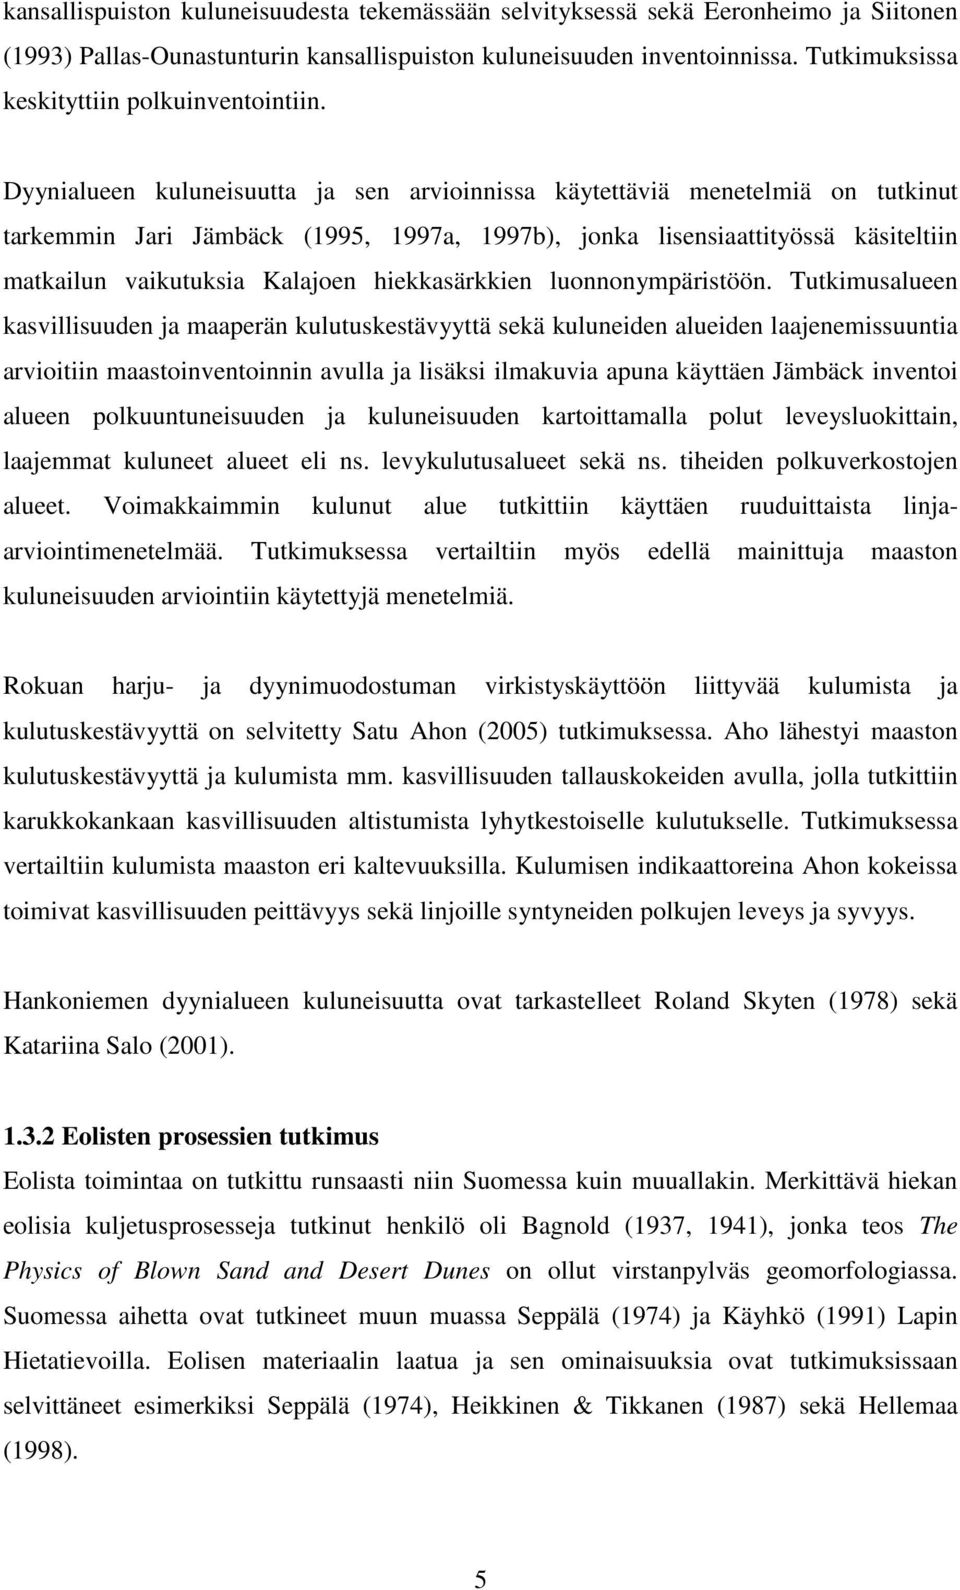 Dyynialueen kuluneisuutta ja sen arvioinnissa käytettäviä menetelmiä on tutkinut tarkemmin Jari Jämbäck (1995, 1997a, 1997b), jonka lisensiaattityössä käsiteltiin matkailun vaikutuksia Kalajoen